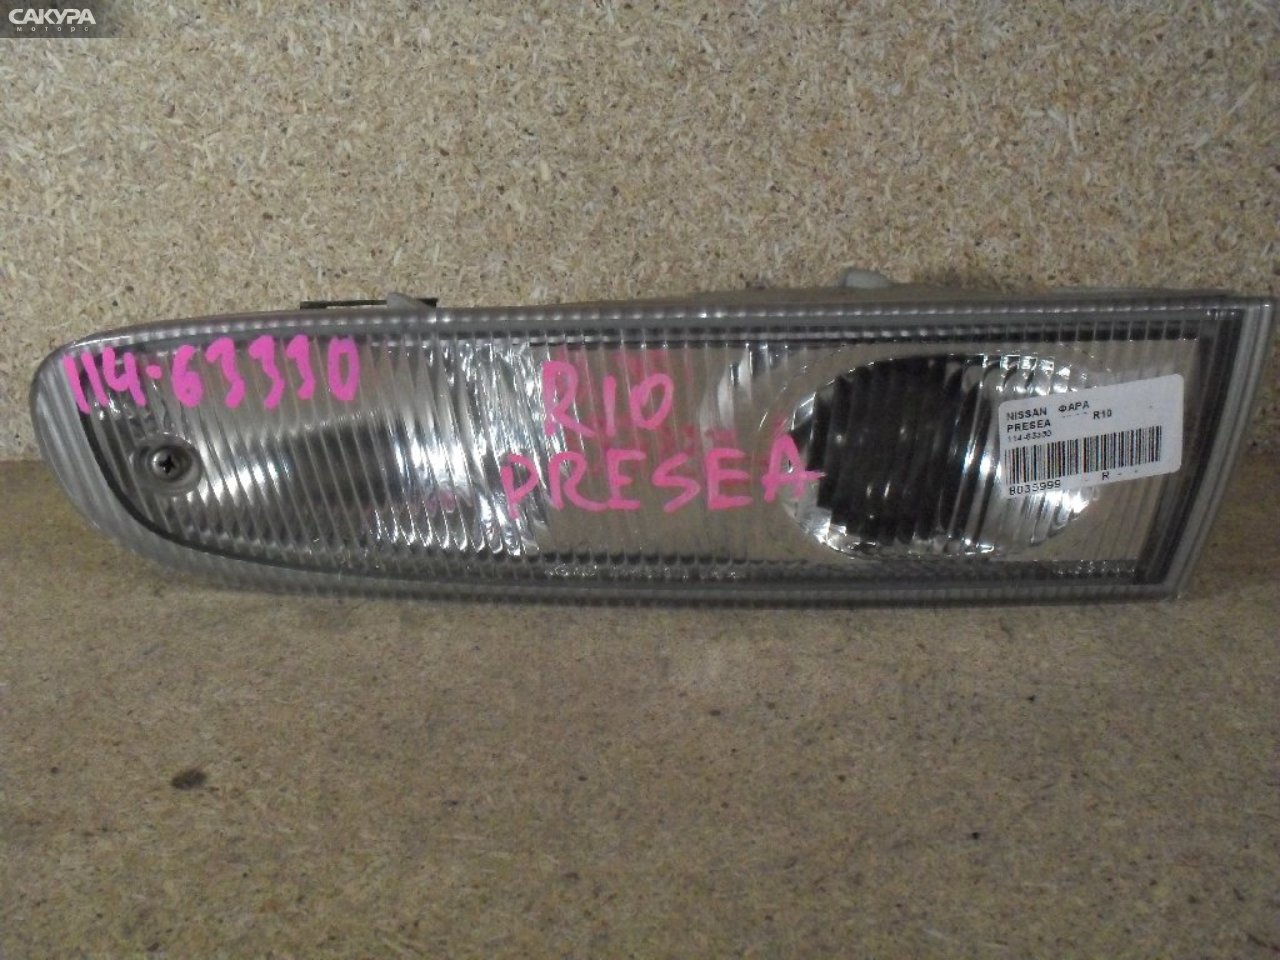 Фара противотуманная правая Nissan Presea R10 114-63330: купить в Сакура Абакан.